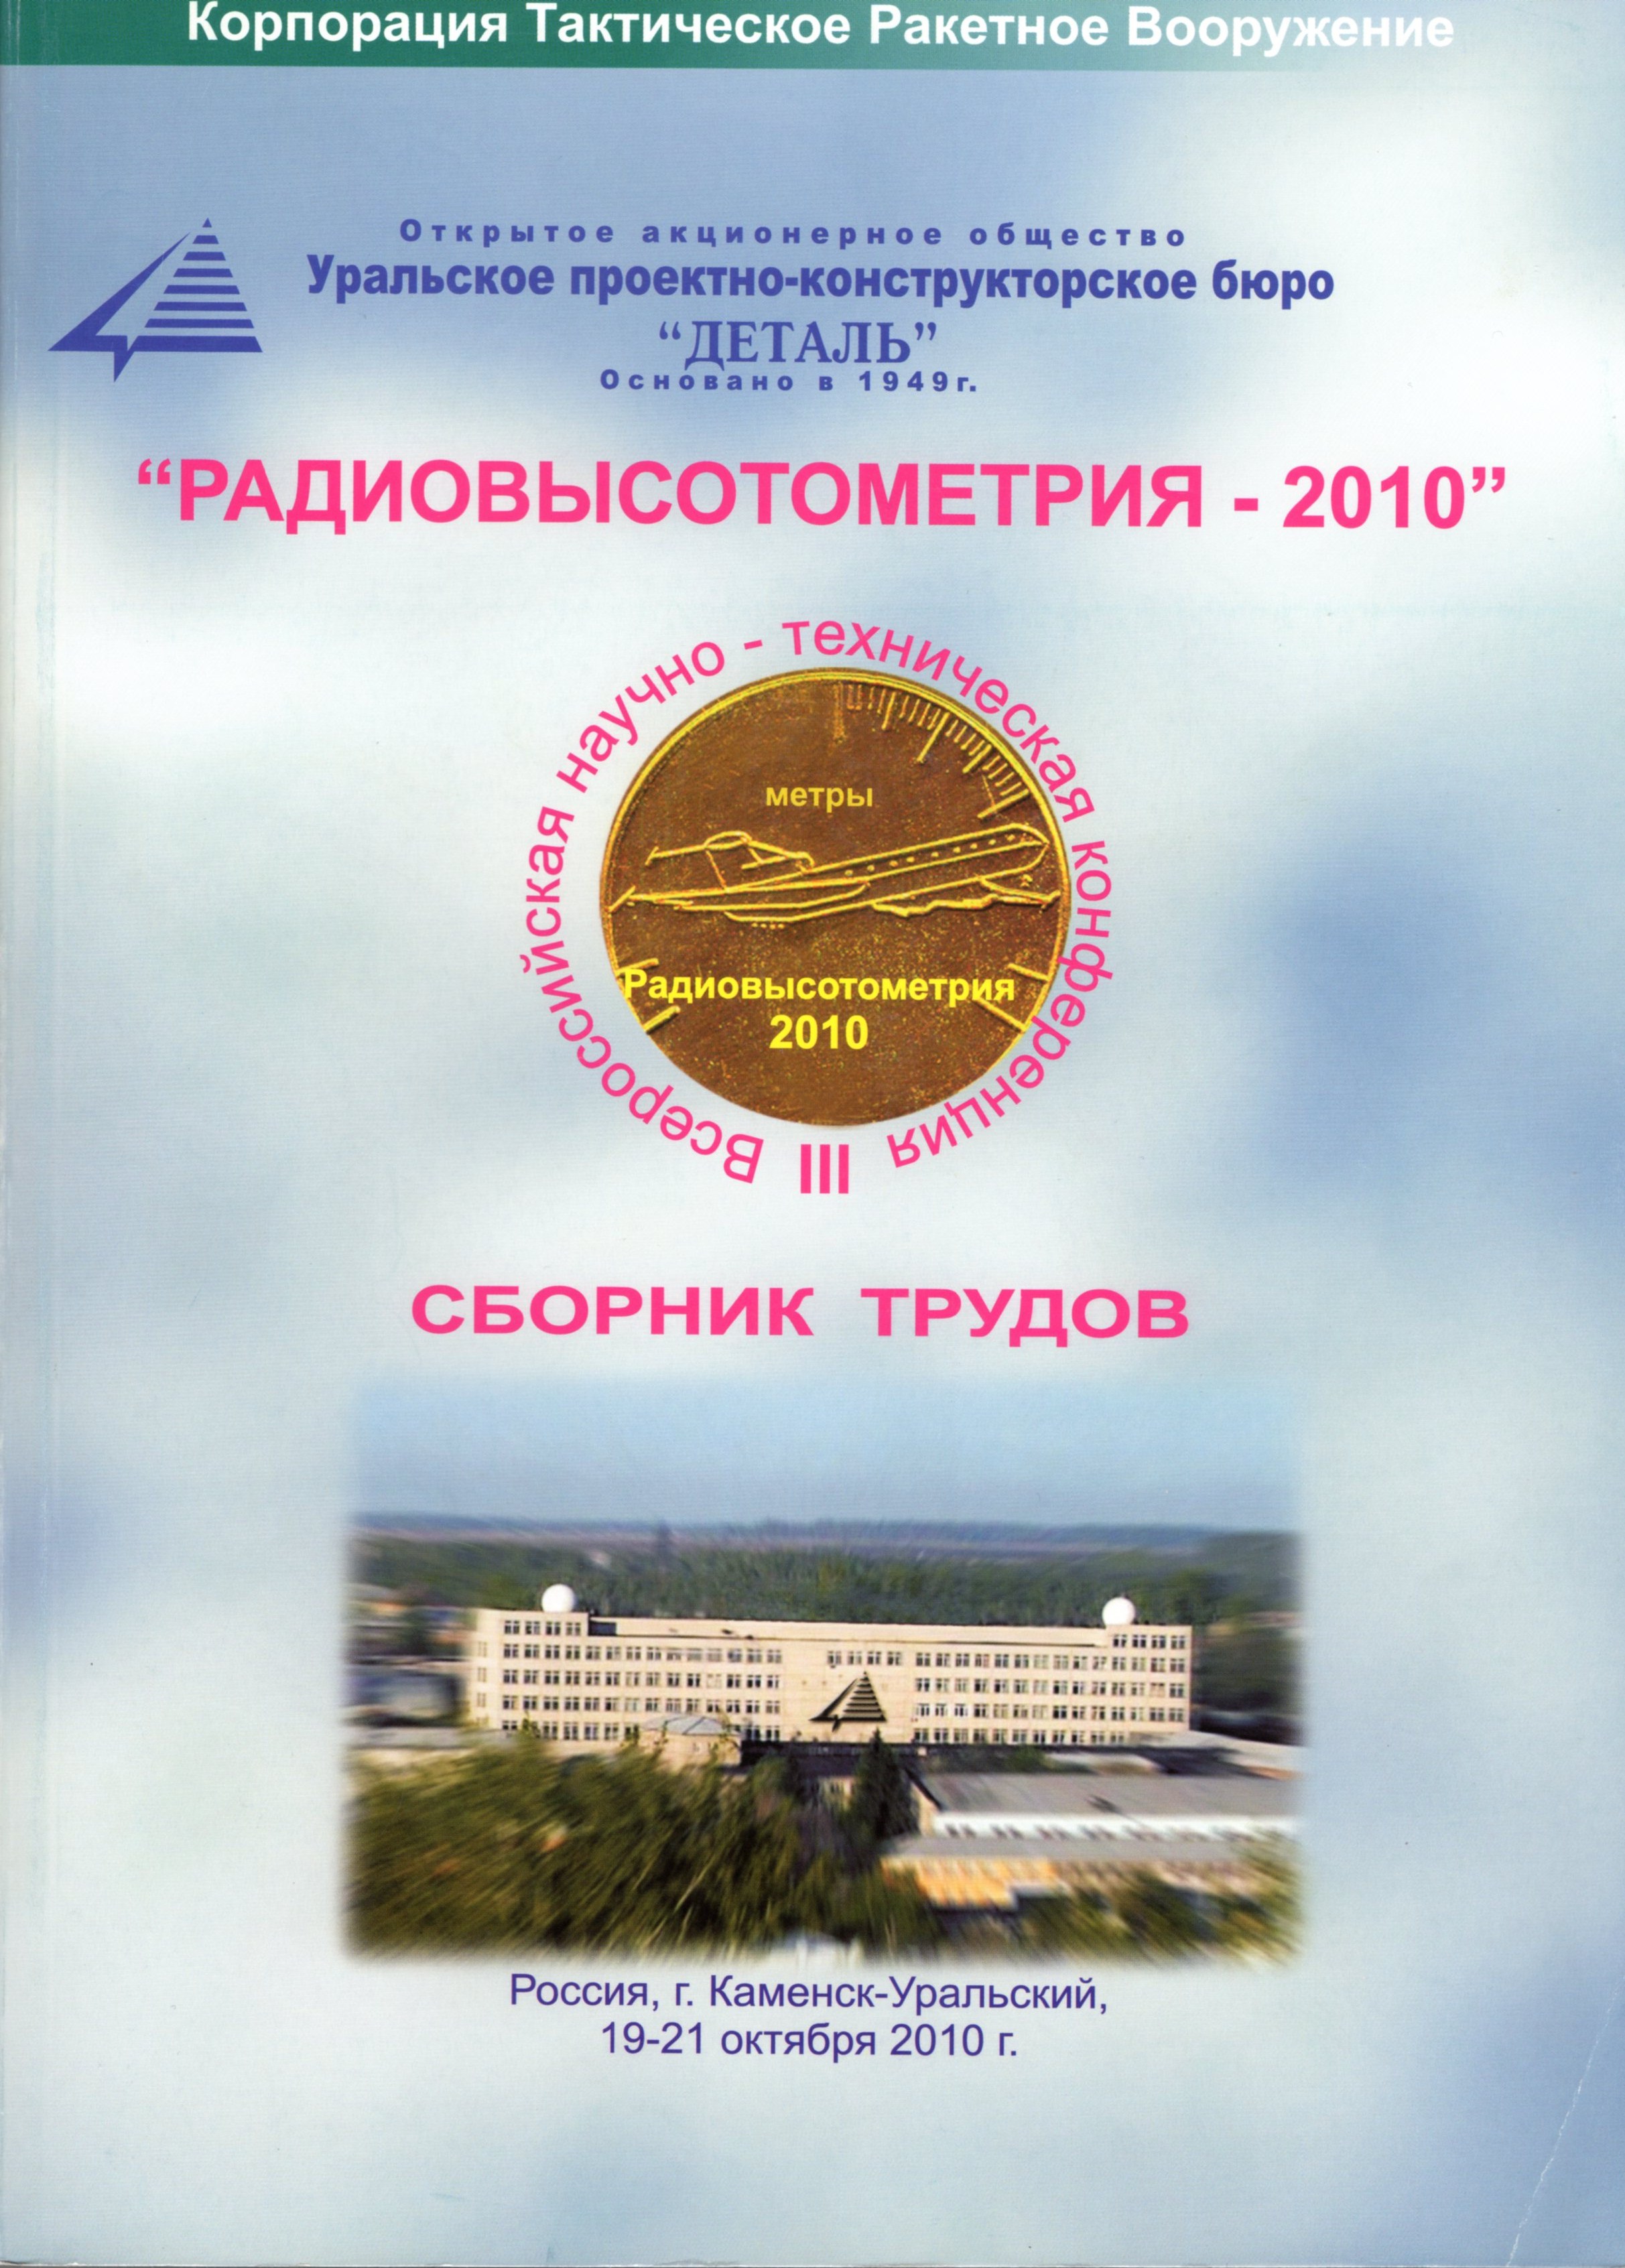 Радиовысотометрия - 2010: Сборник трудов Третьей Всероссийской научно-технической конференции